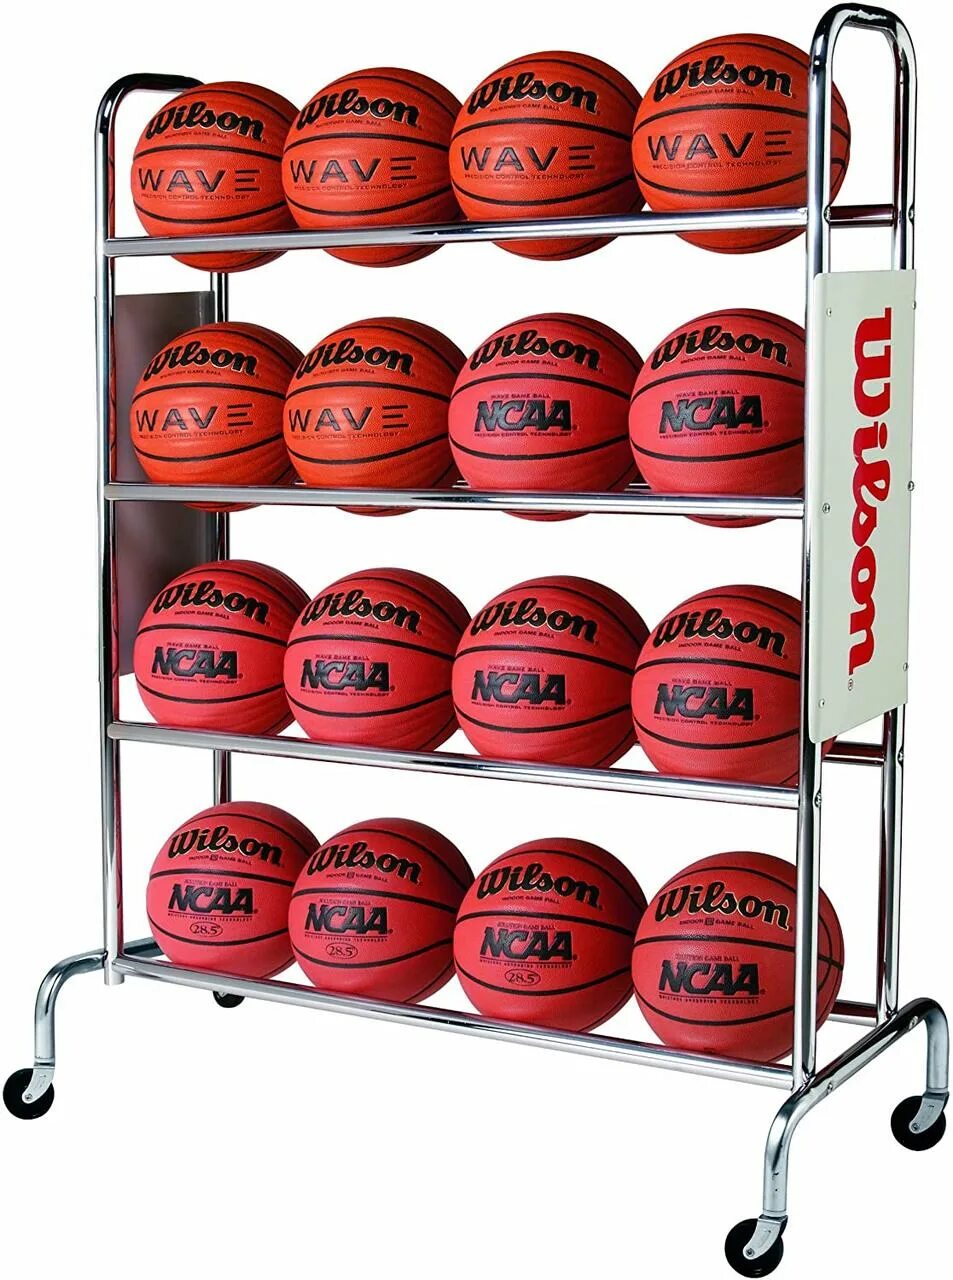 Стеллаж для мячей. Тележка для баскетбольных мячей Spalding 63763. Стойка под баскетбольные мячи Wilson. Подставка для баскетбольного мяча. Полки для баскетбольных мячей.